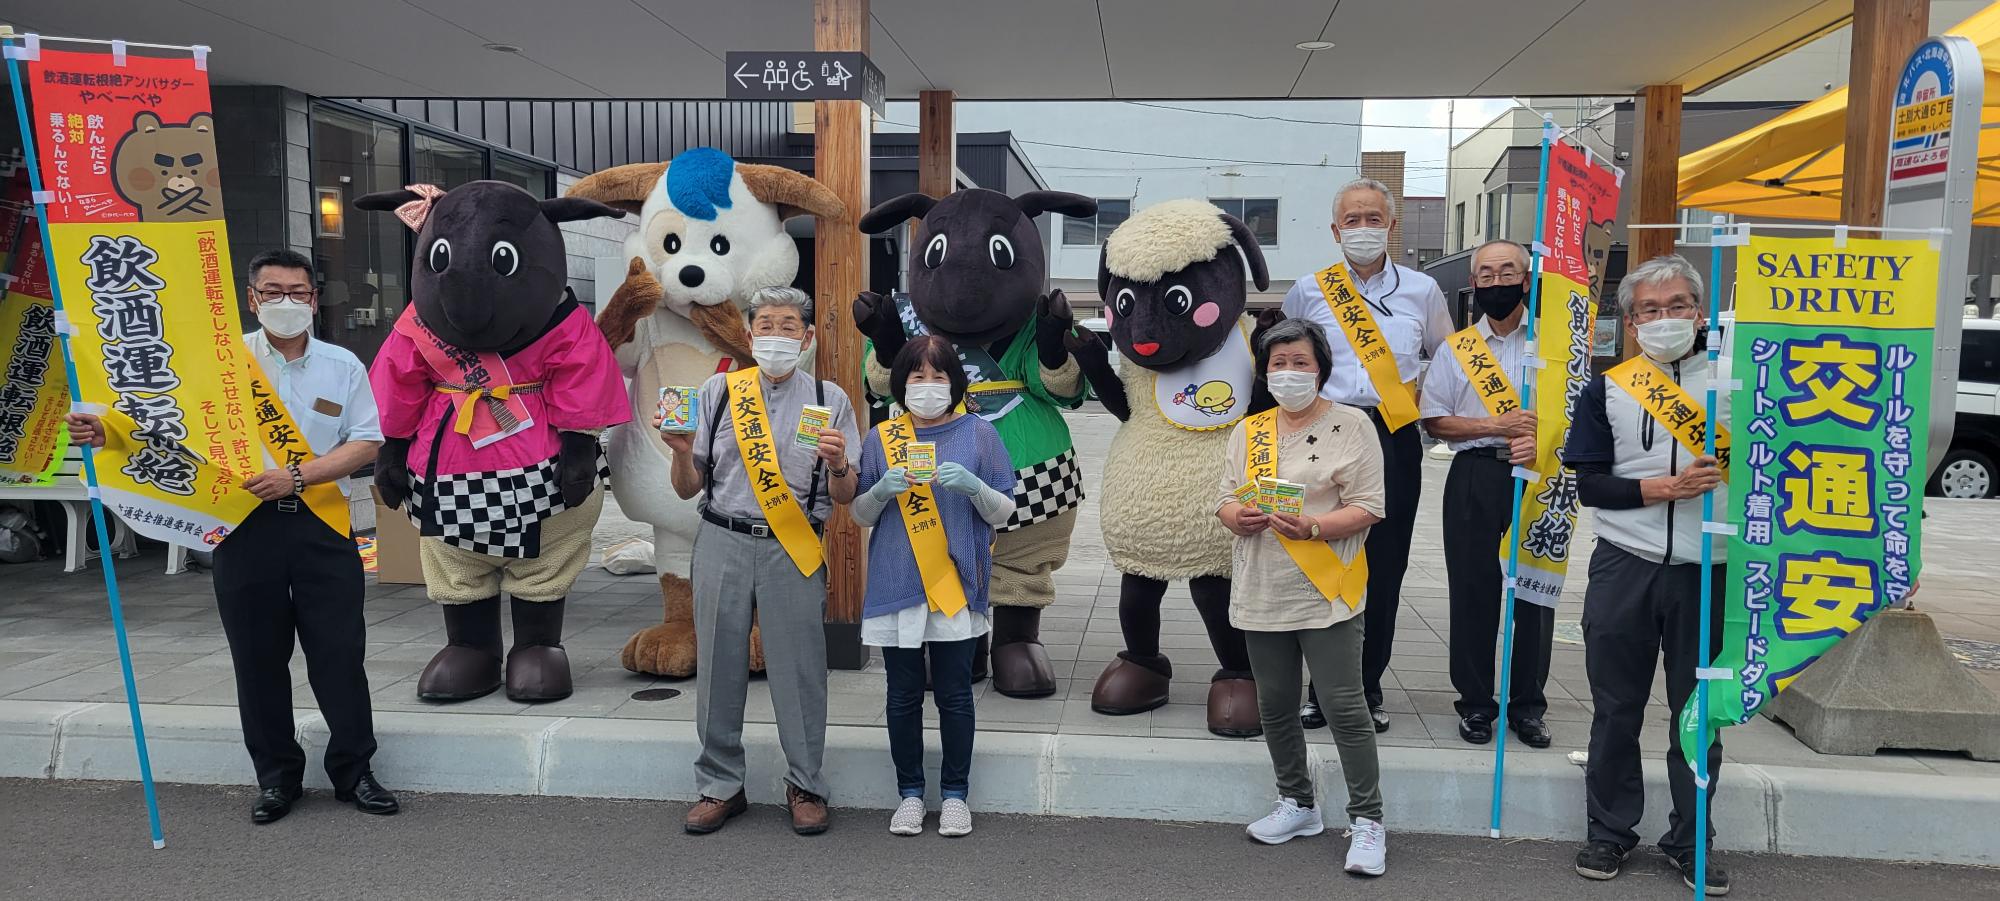 バス停留所でさほっちファミリーと北海道警察マスコットのほくとくん、黄色のたすきを身に着けた4名の安全協会の方、のぼり旗を持った3名の男性達が2列に並んでいる集合写真